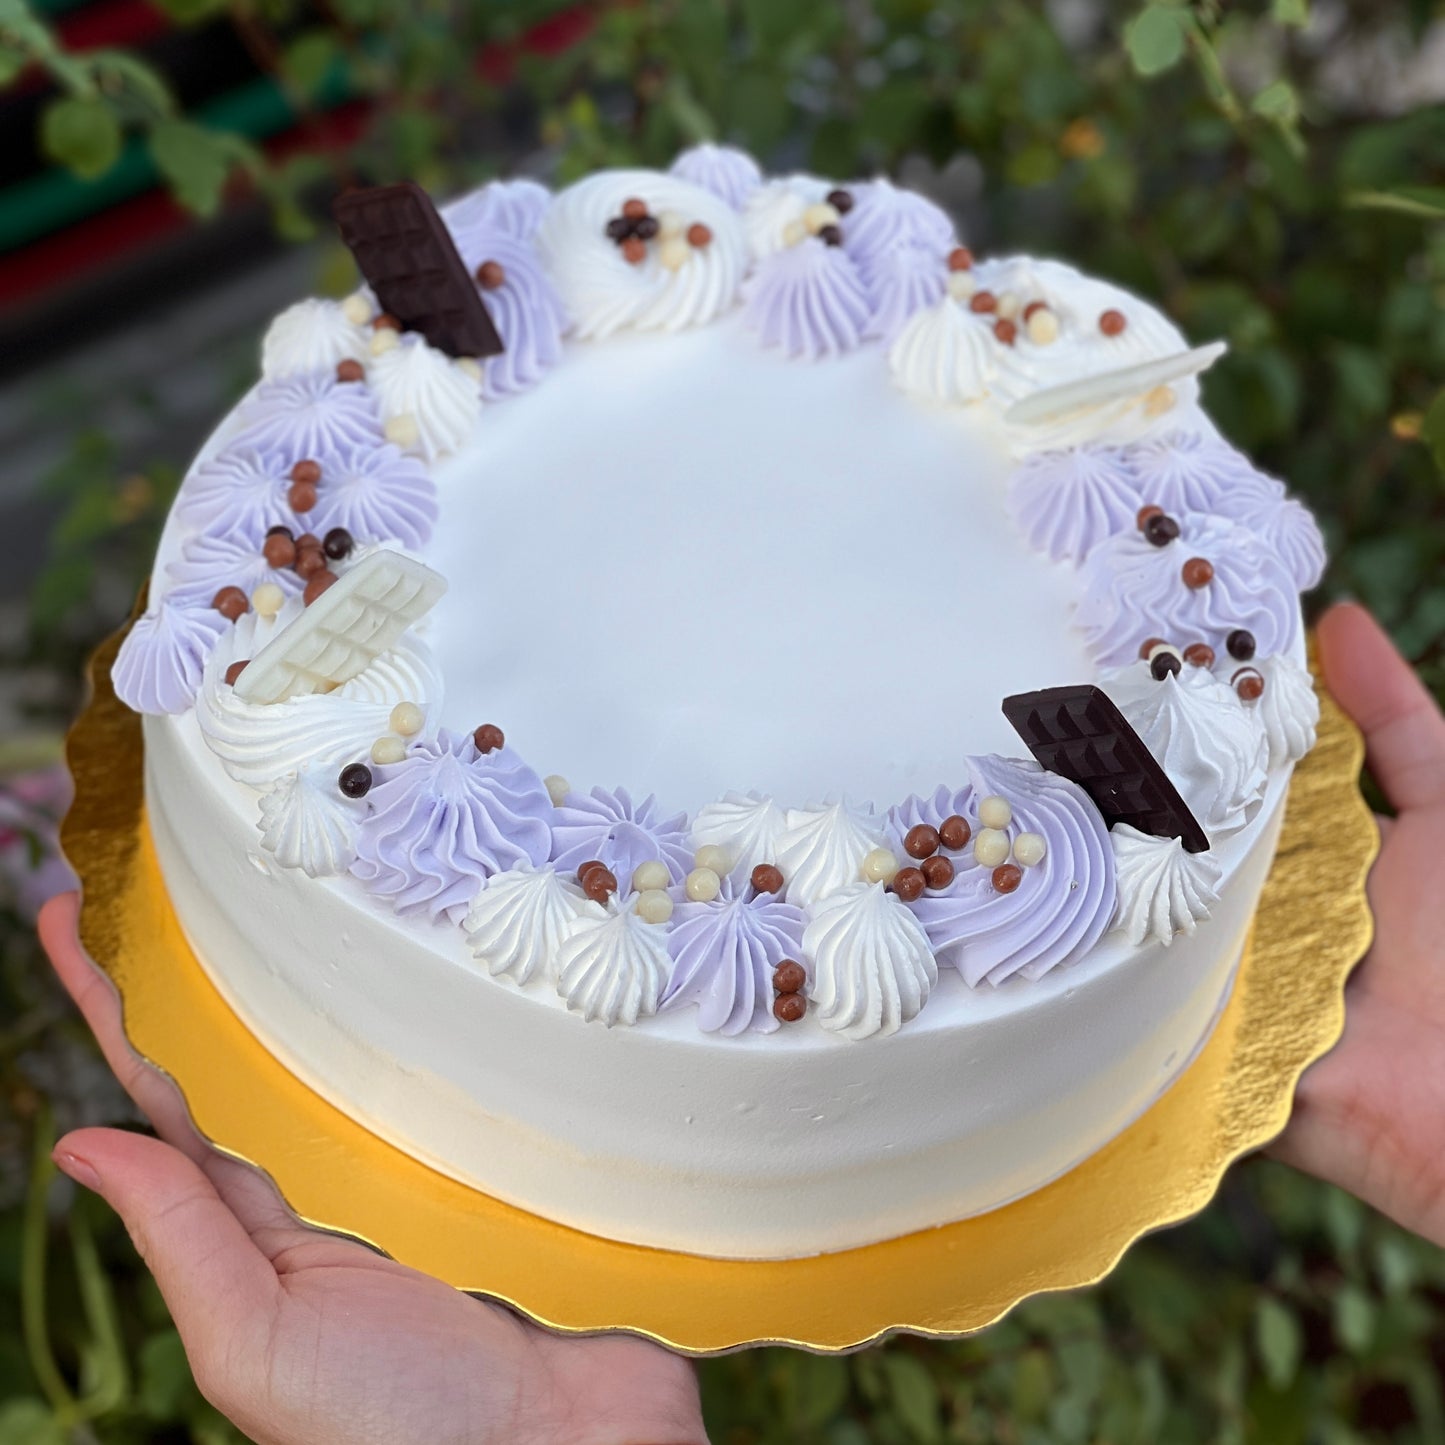 Lavender Italian rum cake